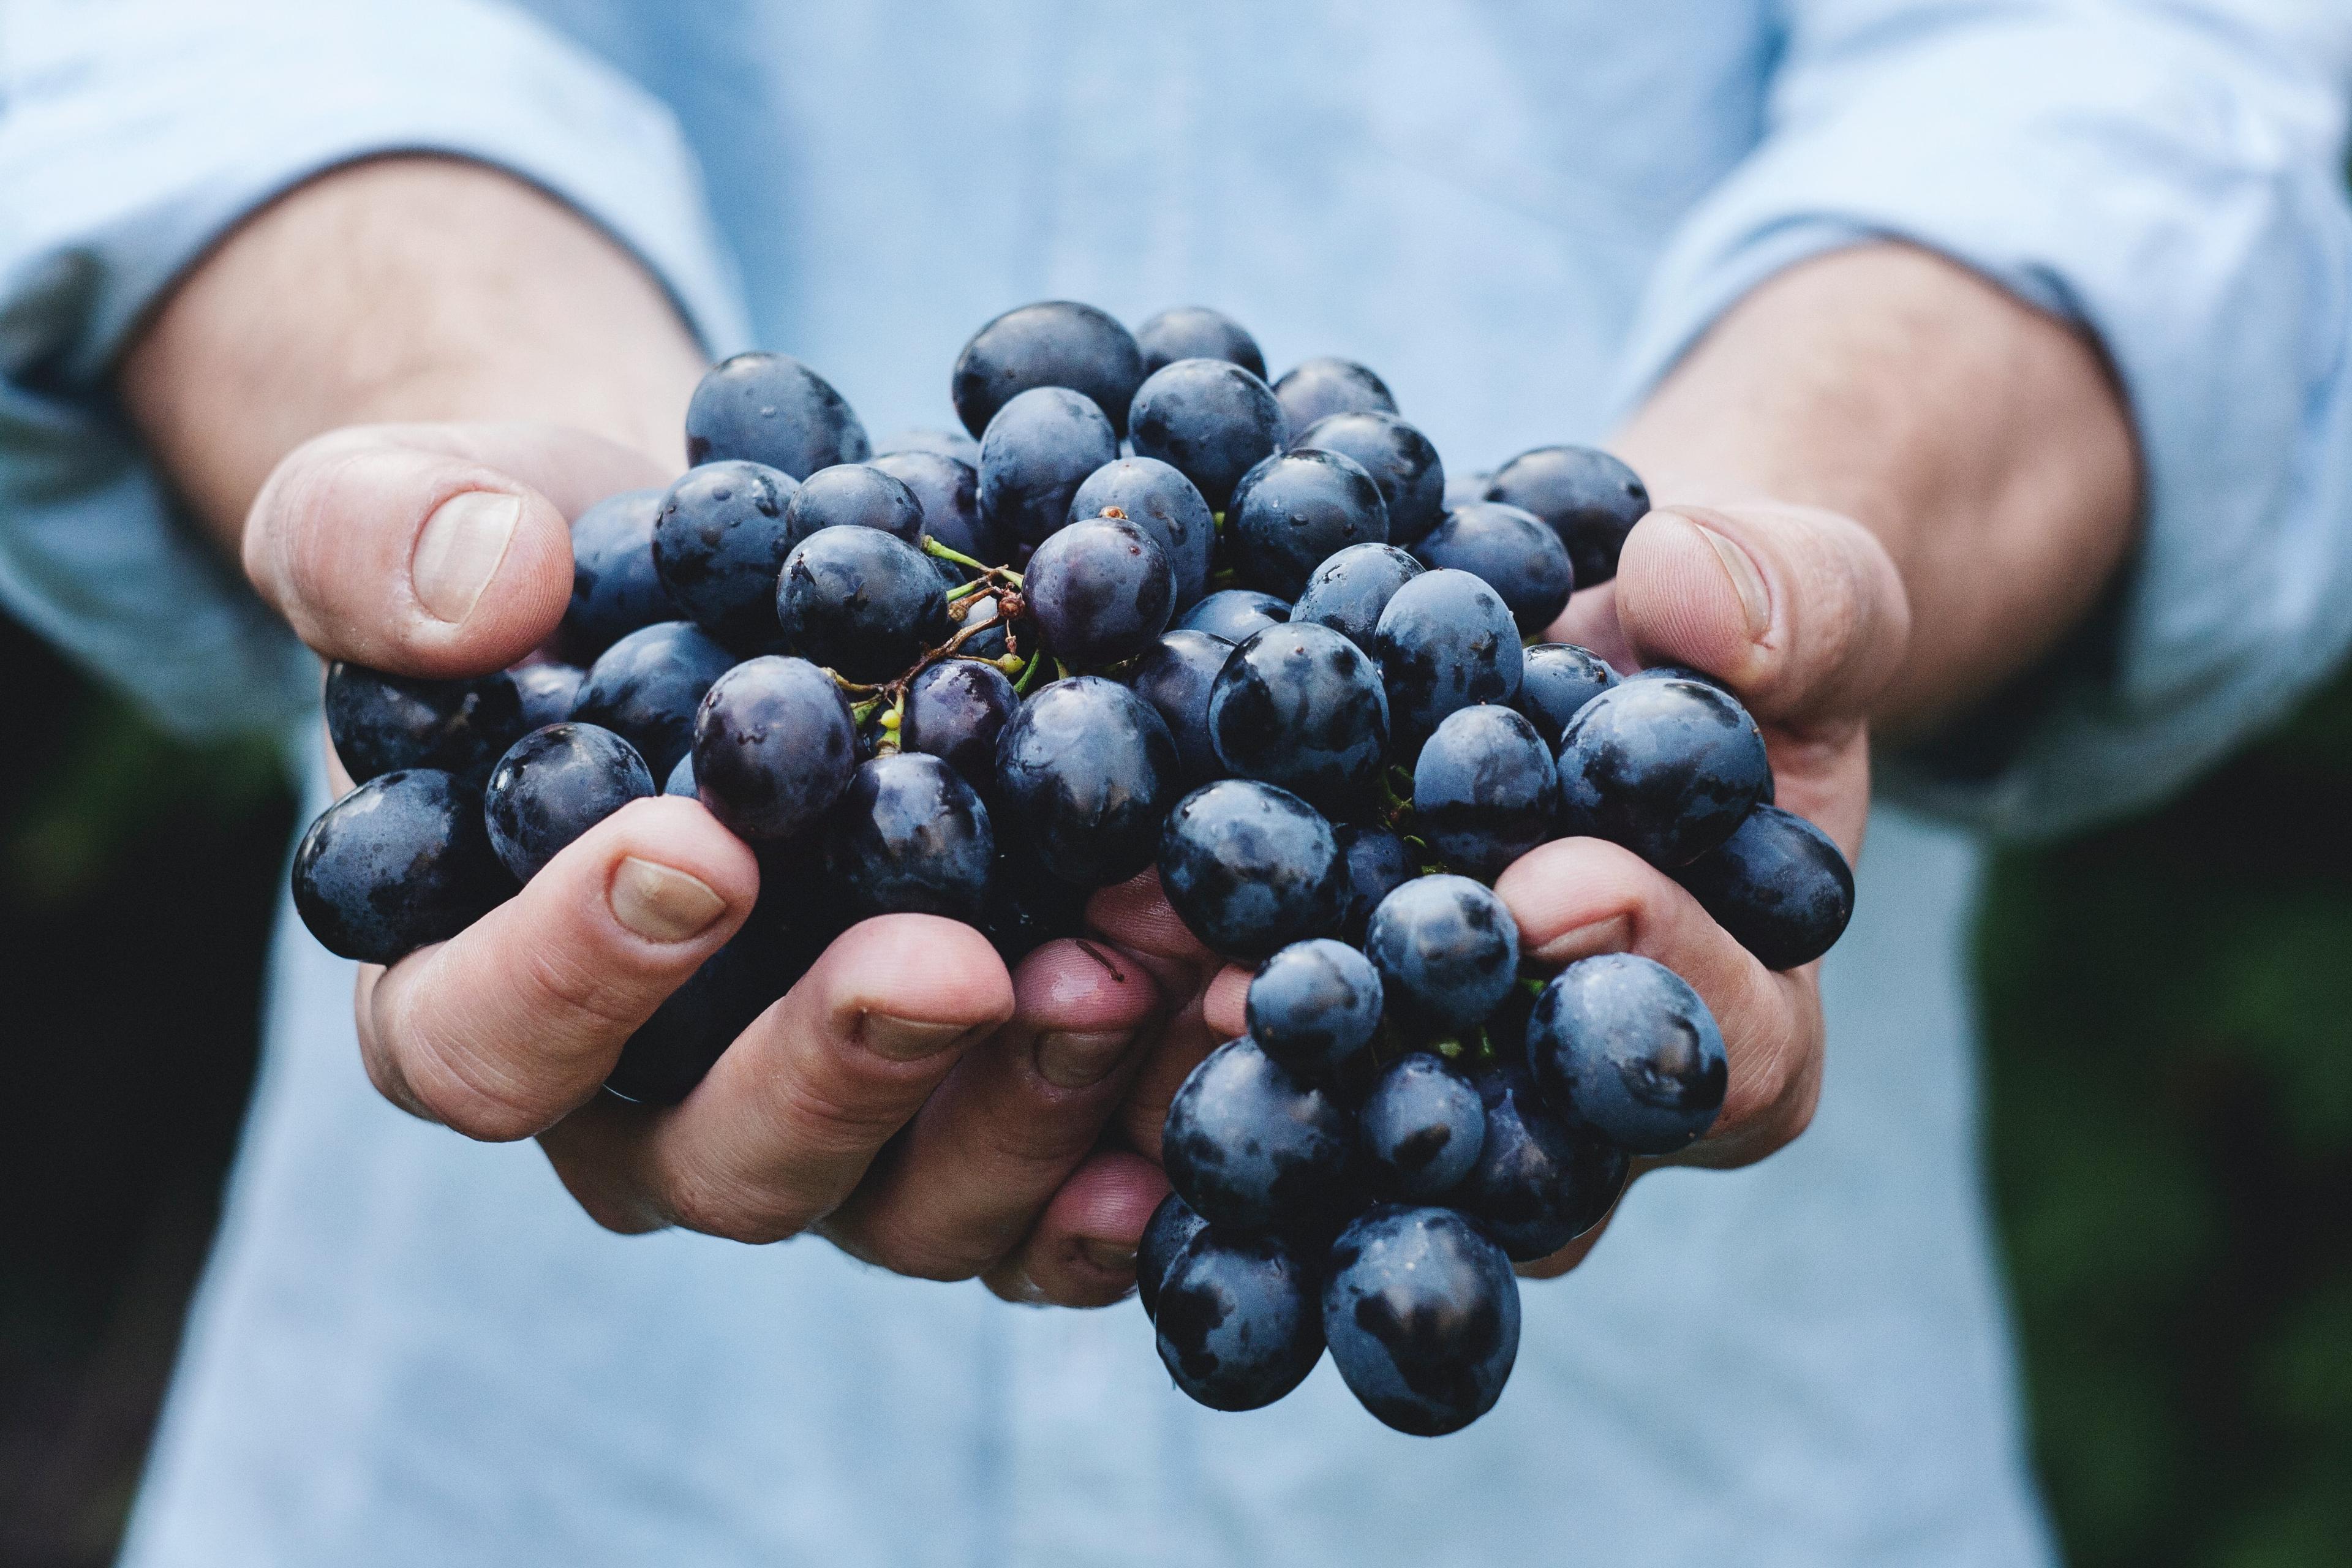 Czy warto jeść winogrona? Indeks glikemiczny, właściwości zdrowotne i które winogrona są zdrowsze? Właściwości zdrowotne winogron. Winogrona – kalorie, wartości odżywcze i właściwości prozdrowotne. Winogrona owoce - właściwości, witaminy i wartości odżywcze winogron 